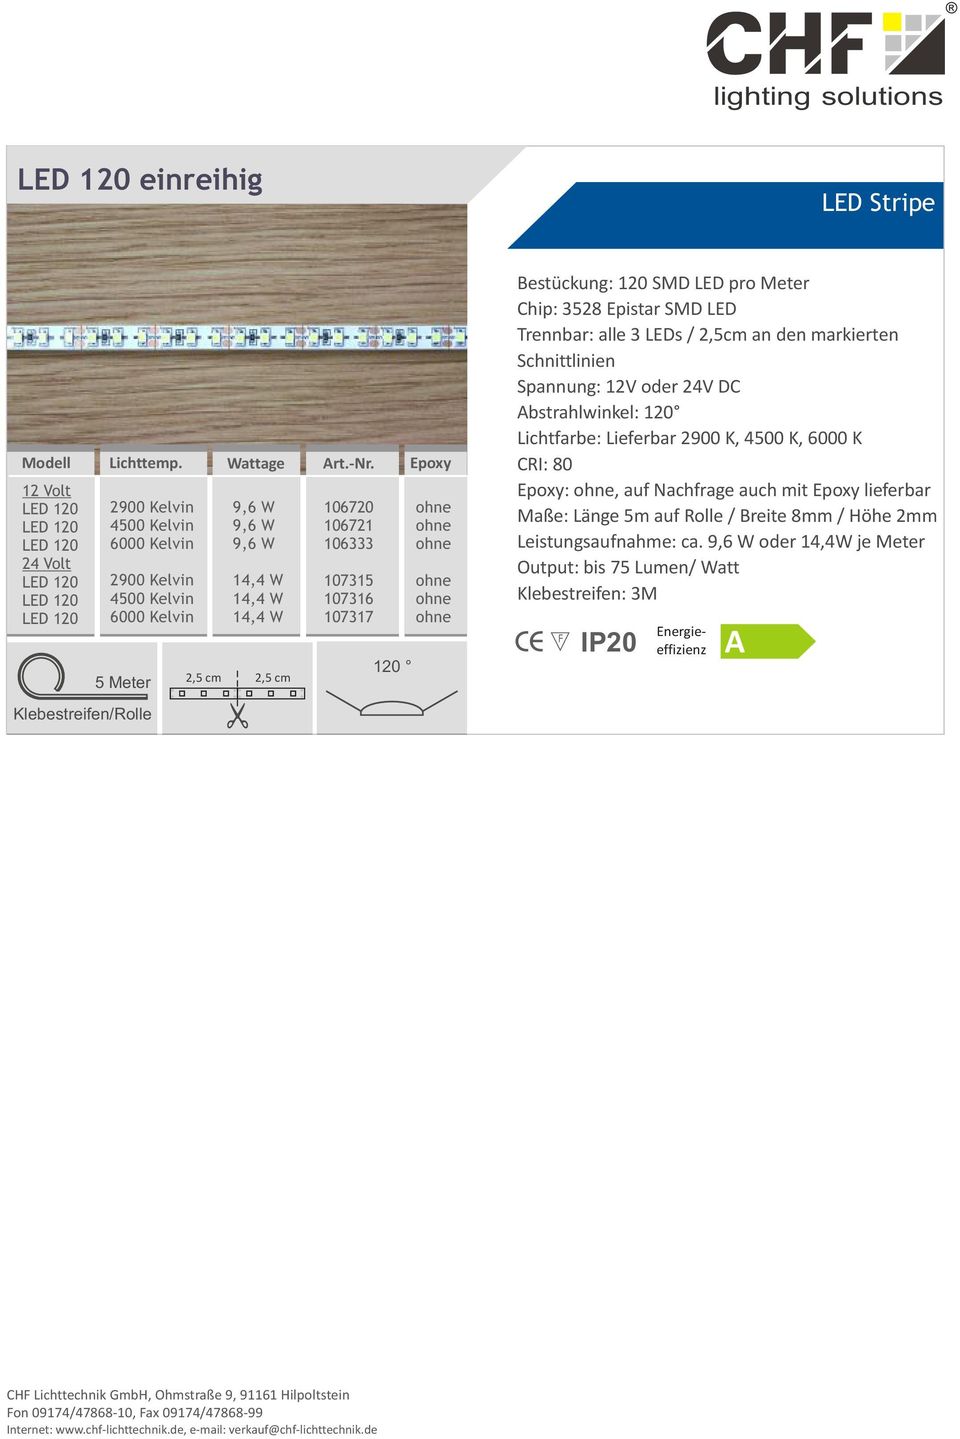 3 LEDs / 2,5cm an den markierten Schnittlinien Spannung: 12V oder 24V DC Lichtfarbe: Lieferbar 2900 K, 4500 K, 6000 K CRI: 80 :, auf Nachfrage auch mit